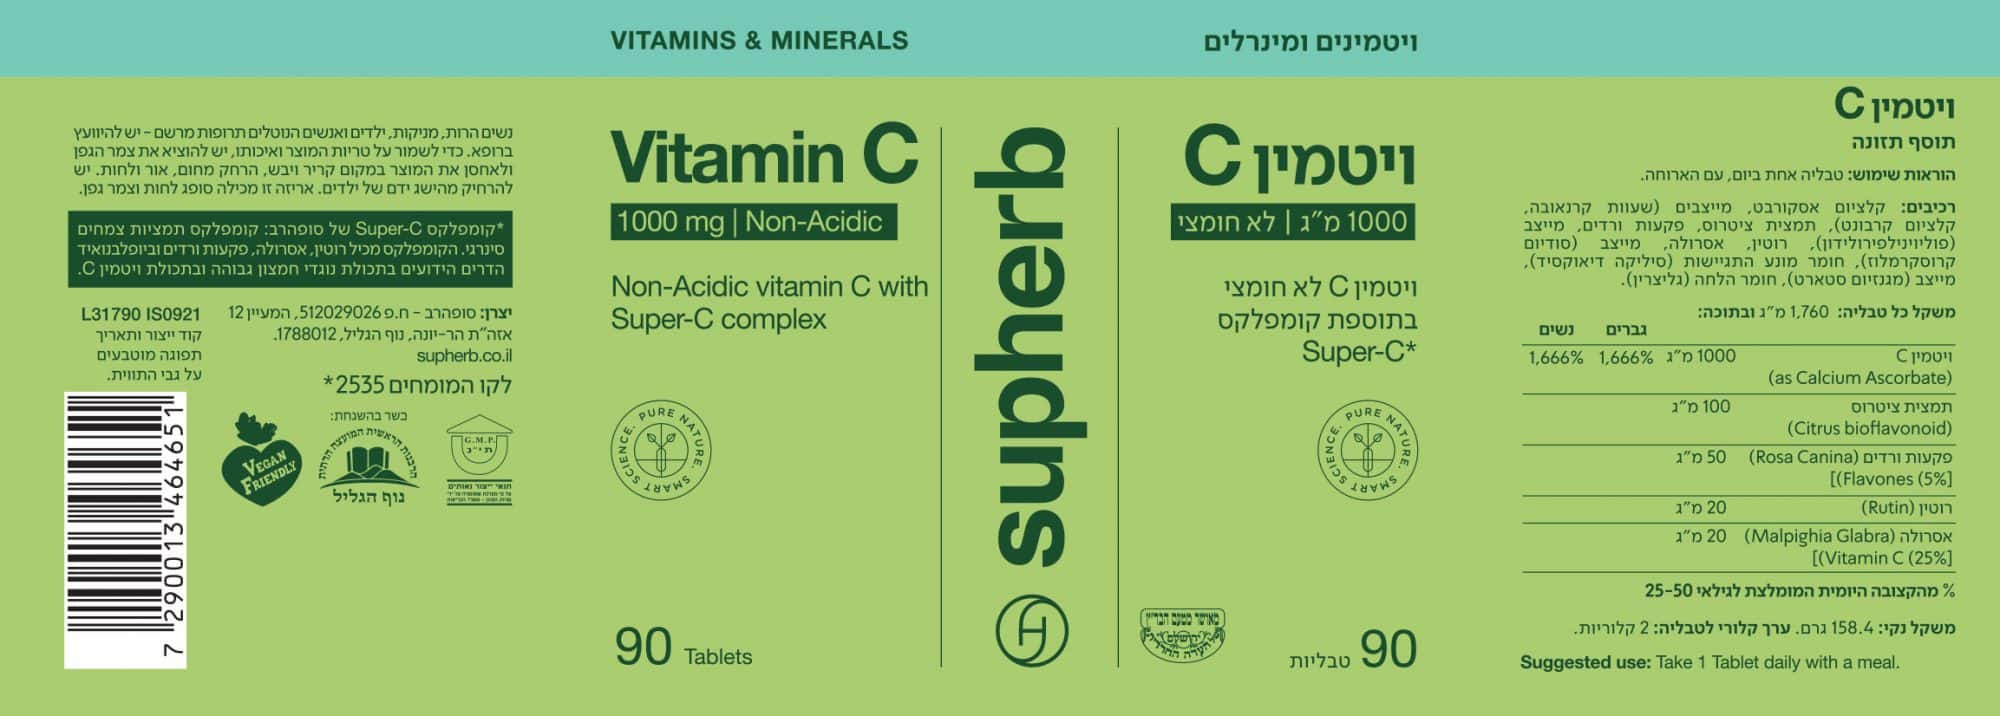 ויטמין C לא חומצי 1,000 מ"ג